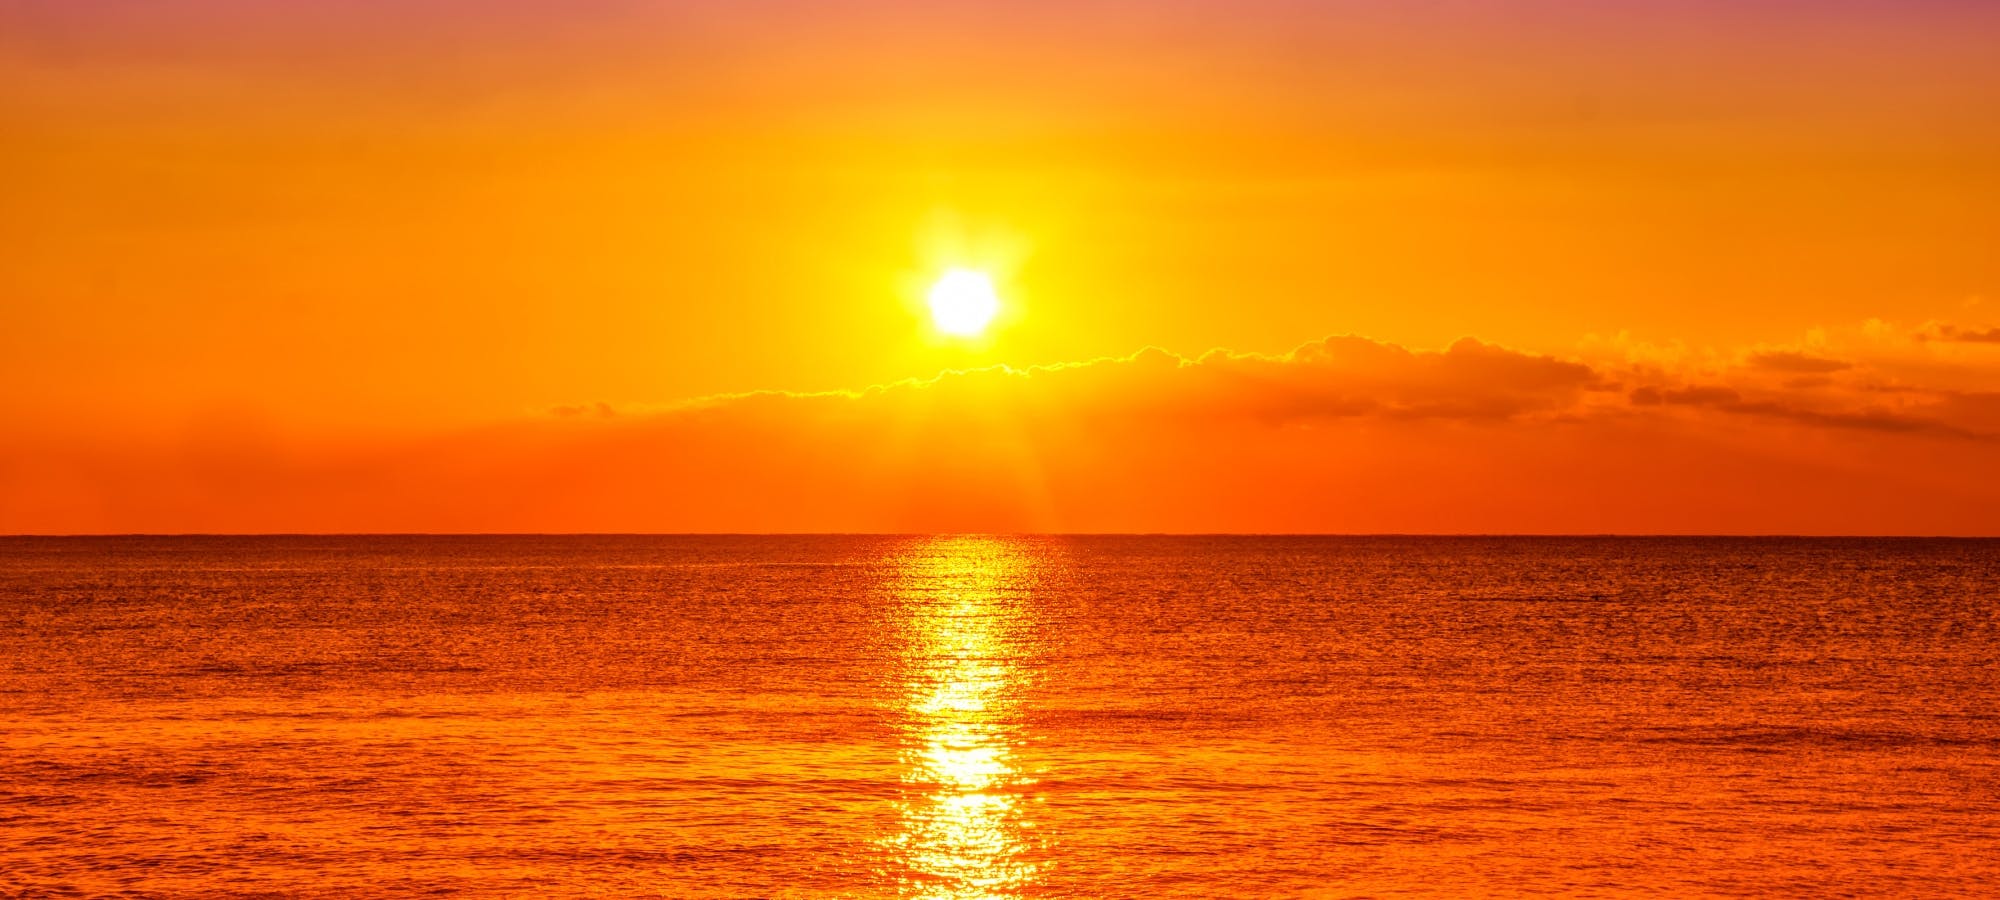 Żegluga o zachodzie słońca szkunerem z ożaglowaniem gaflowym w zatoce Tampa